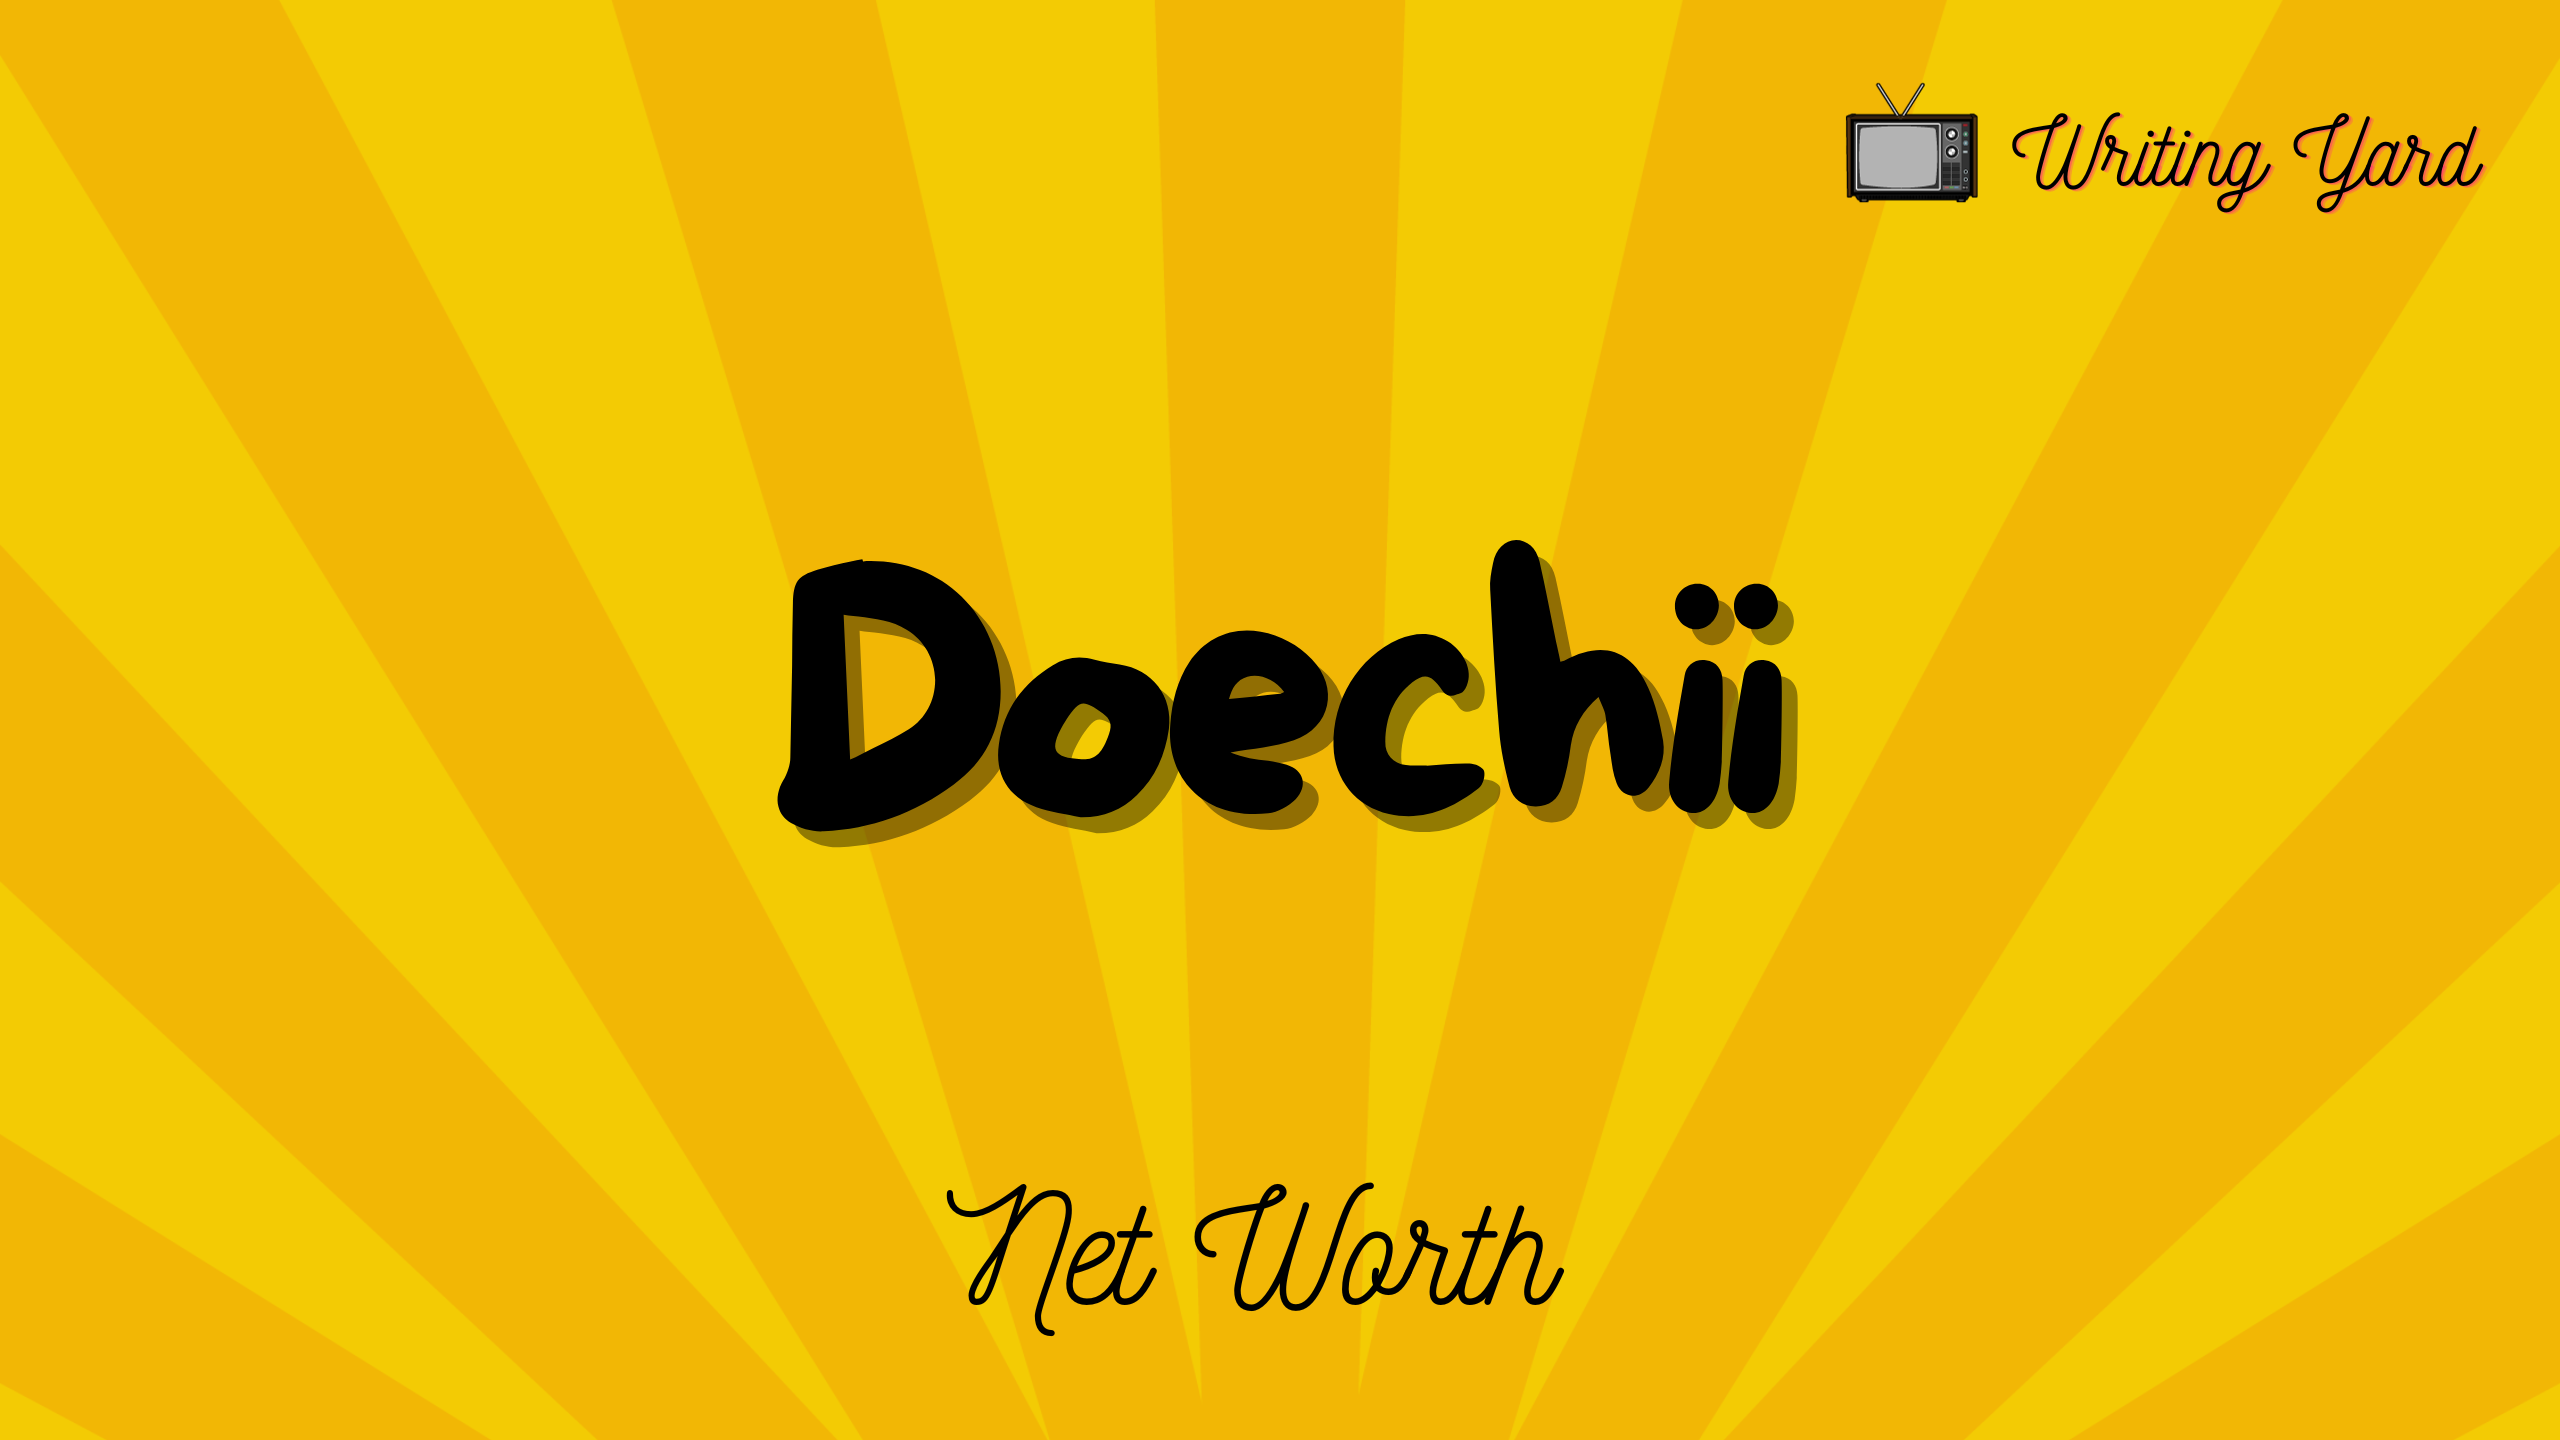 Doechii Net Worth